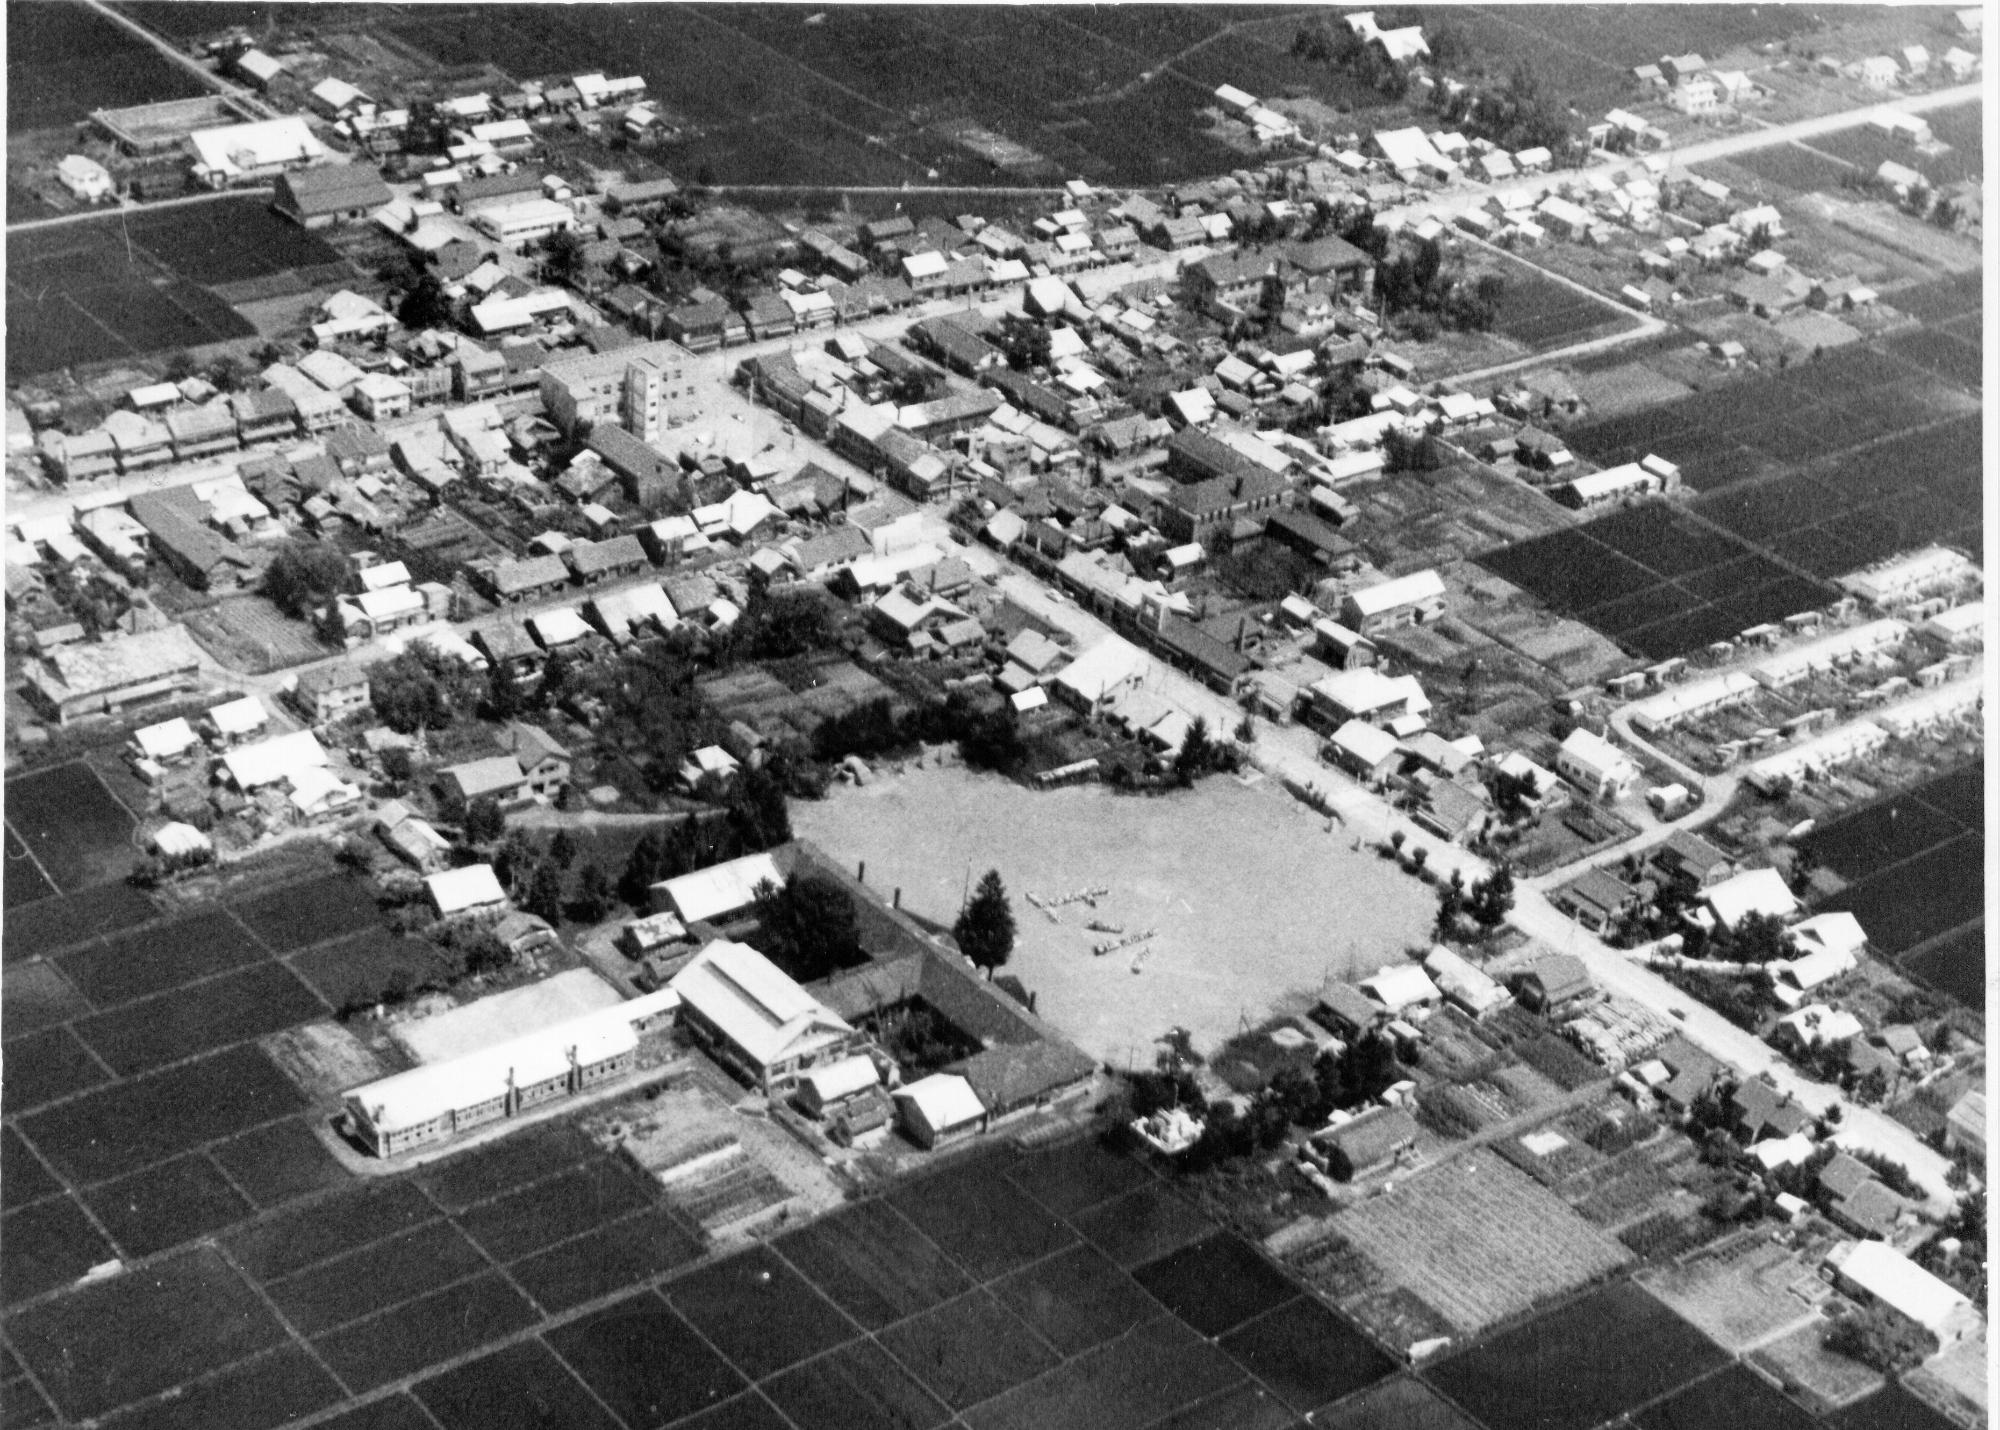 周囲に民家が建っている中央の校庭に「上小」と人文字で書かれた昭和30年頃の上士別小学校の航空写真